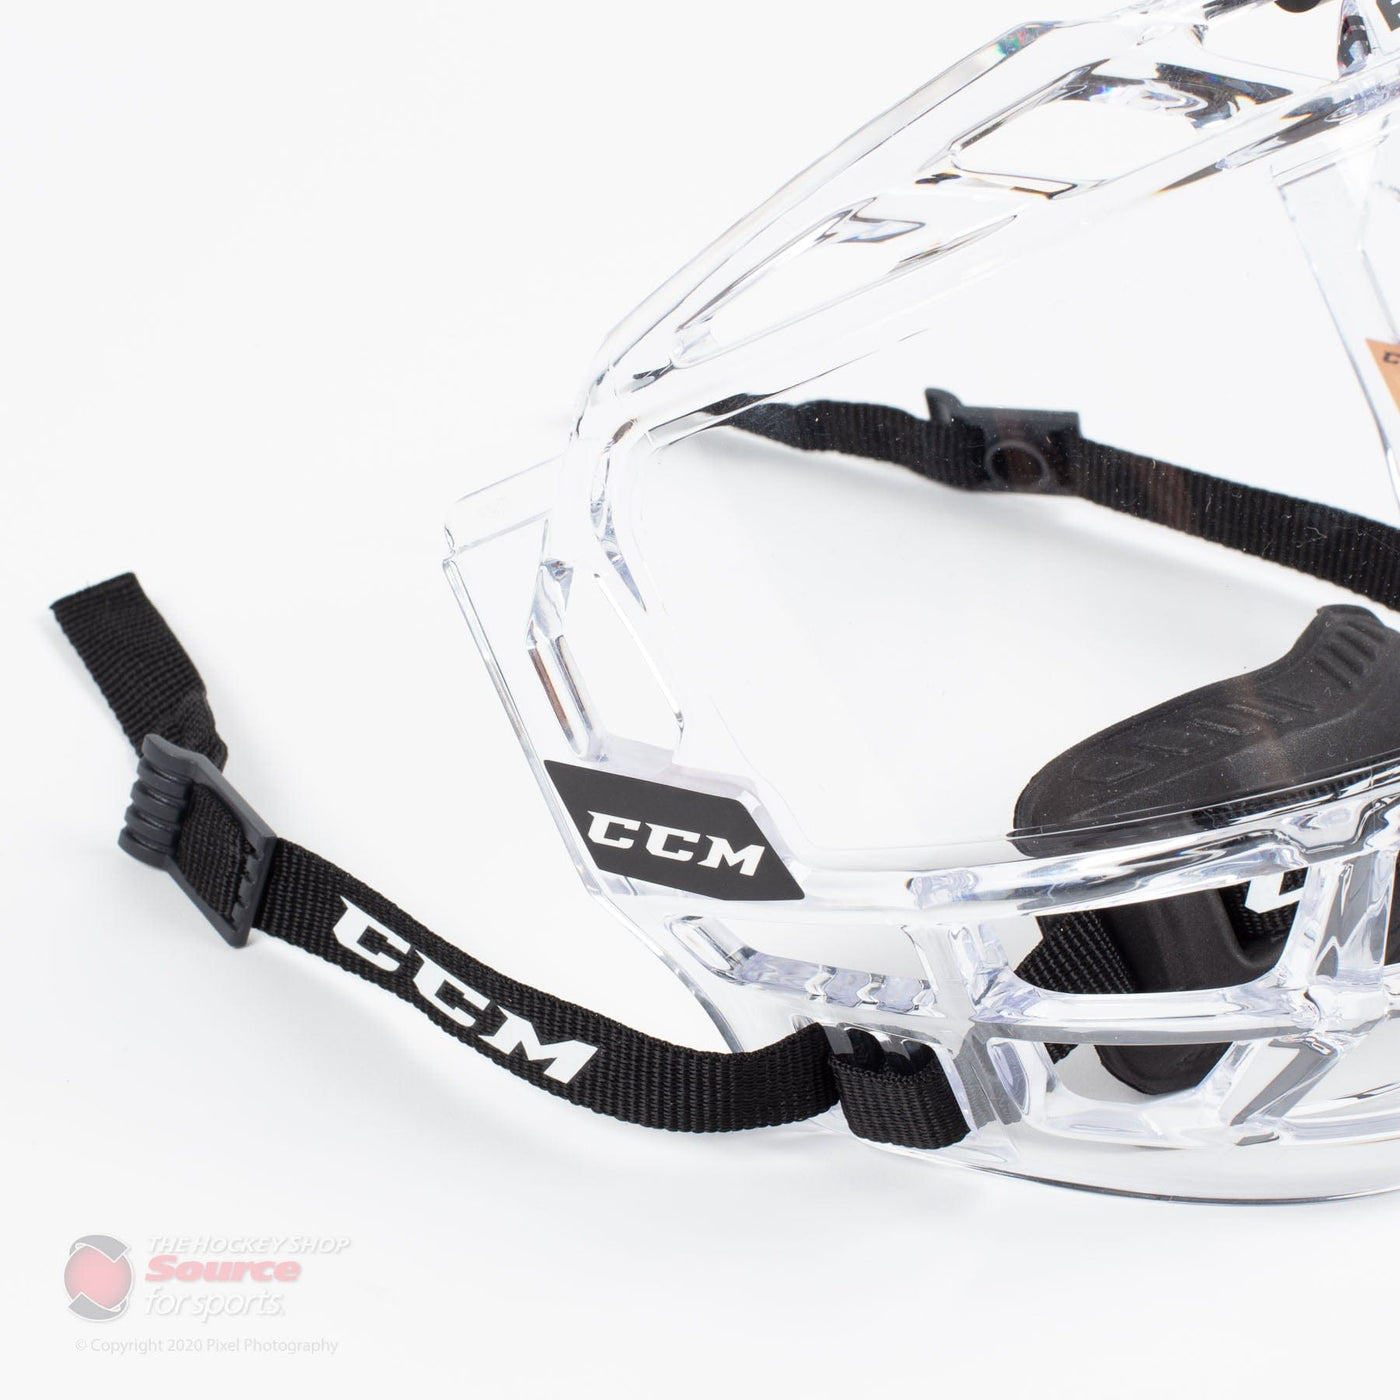 CCM FV1 Junior Hockey Full Face Shield